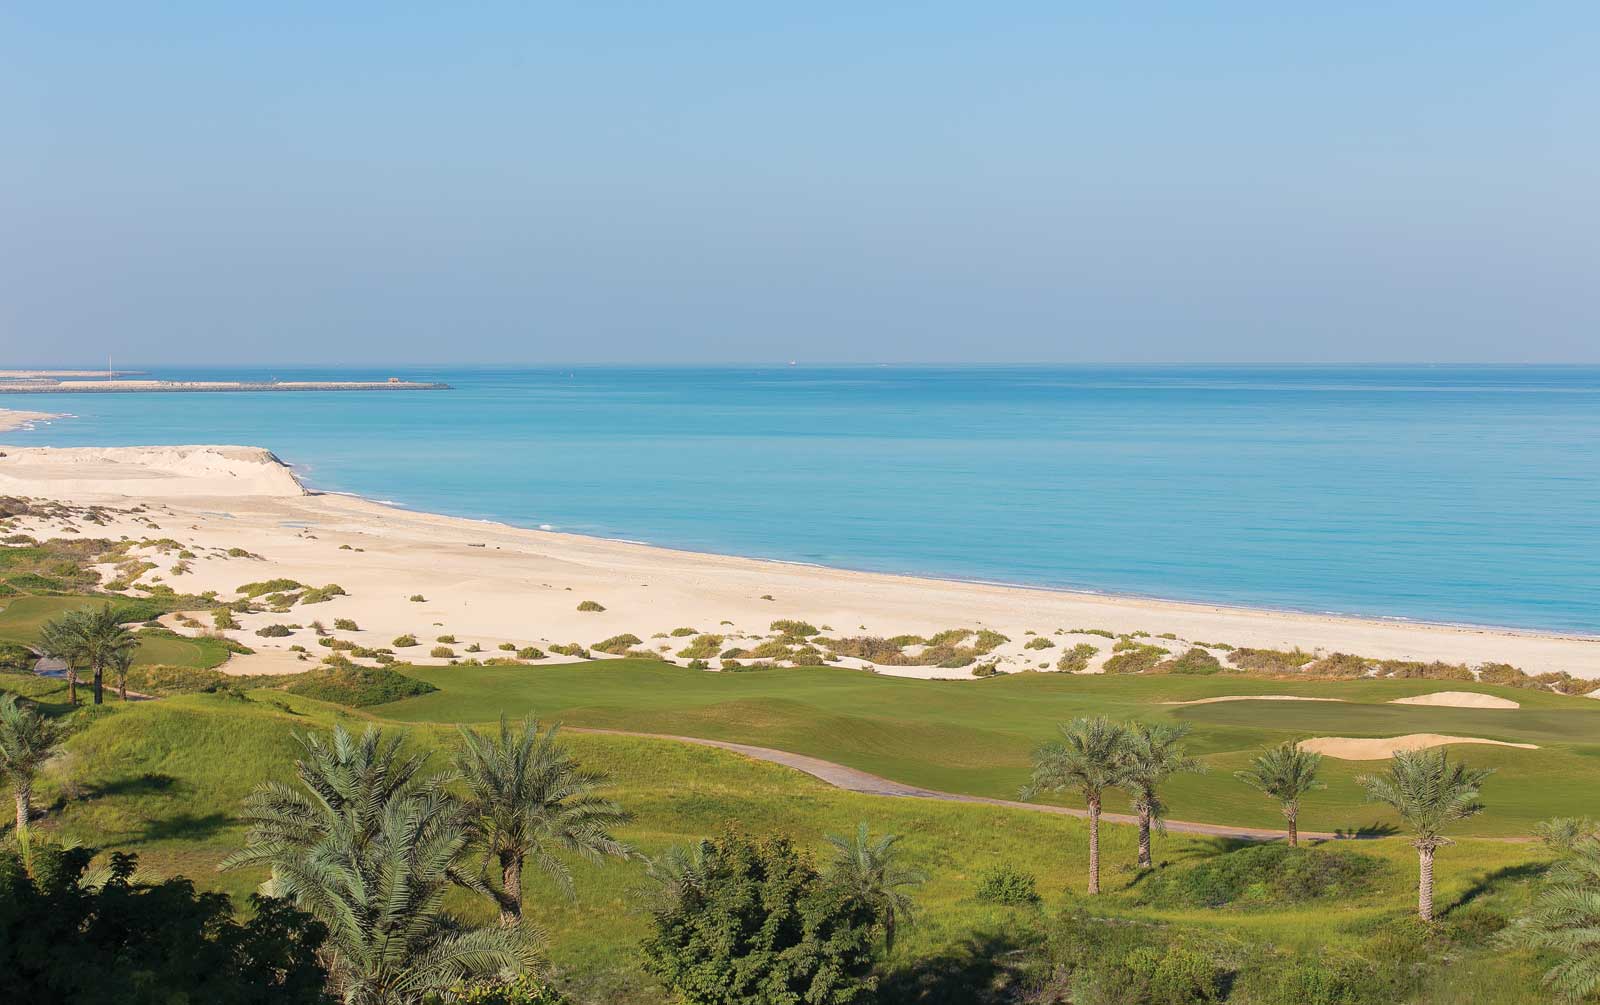 Abu Dhabi stunning coastline